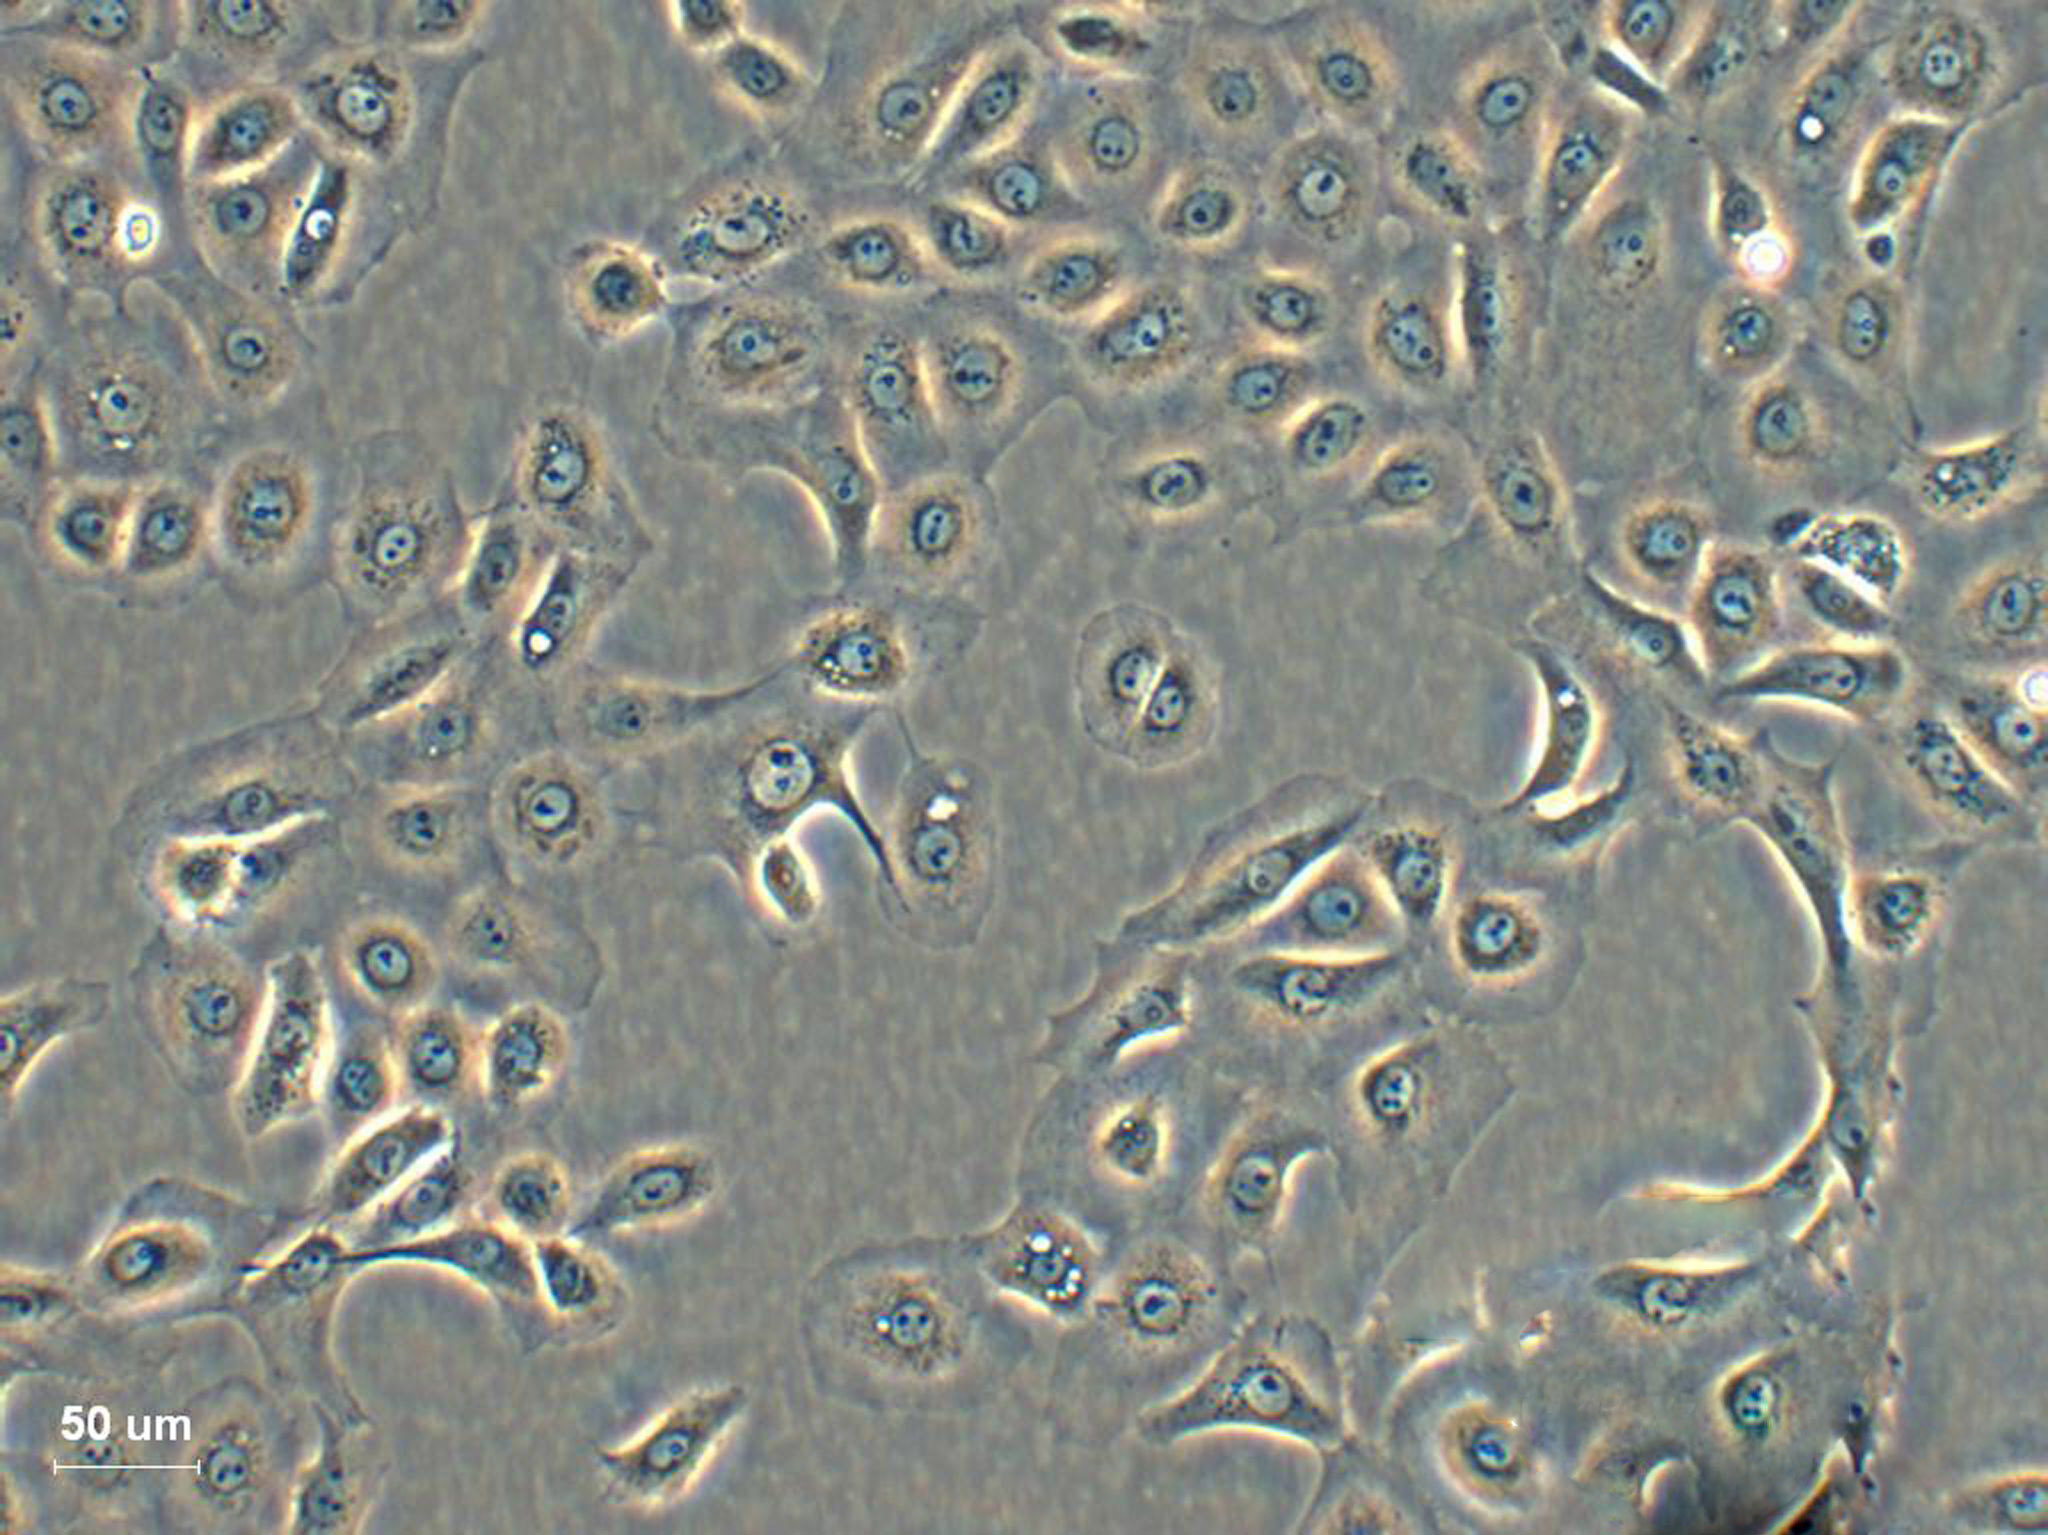 KP-N-RT-BM-1:人神经母细胞瘤复苏细胞(提供STR鉴定图谱),KP-N-RT-BM-1